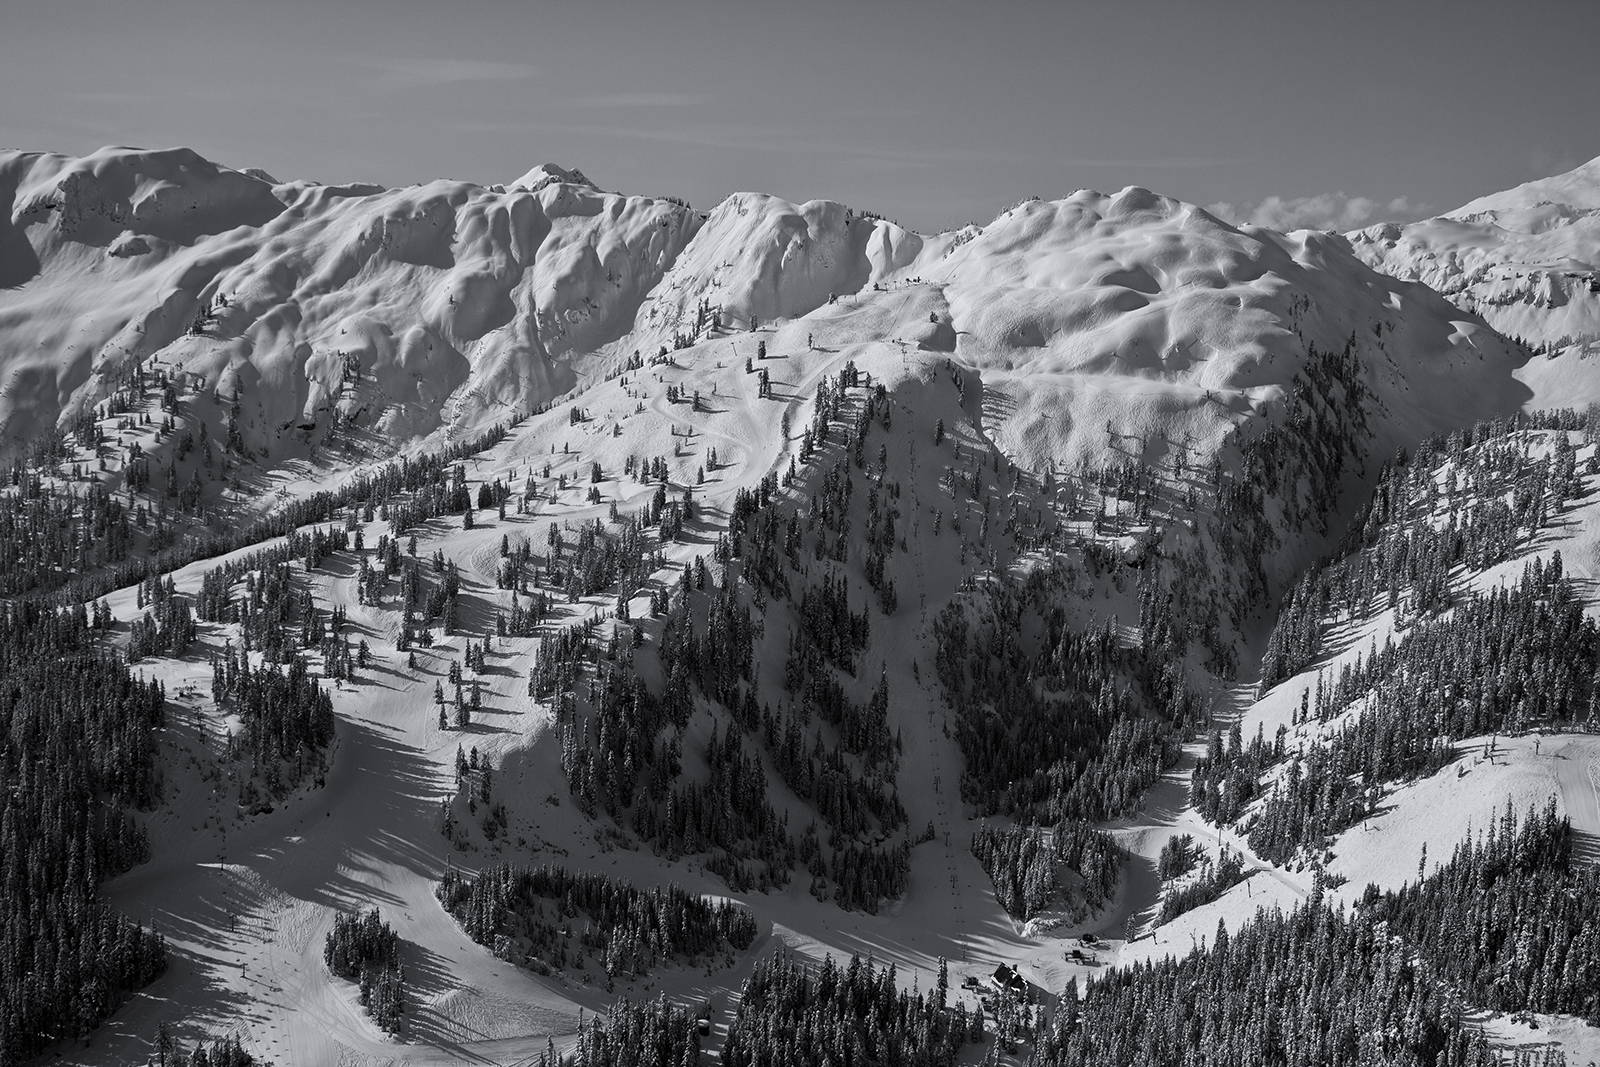 A black and white photo of mountainous ski terrain near Mt. Baker